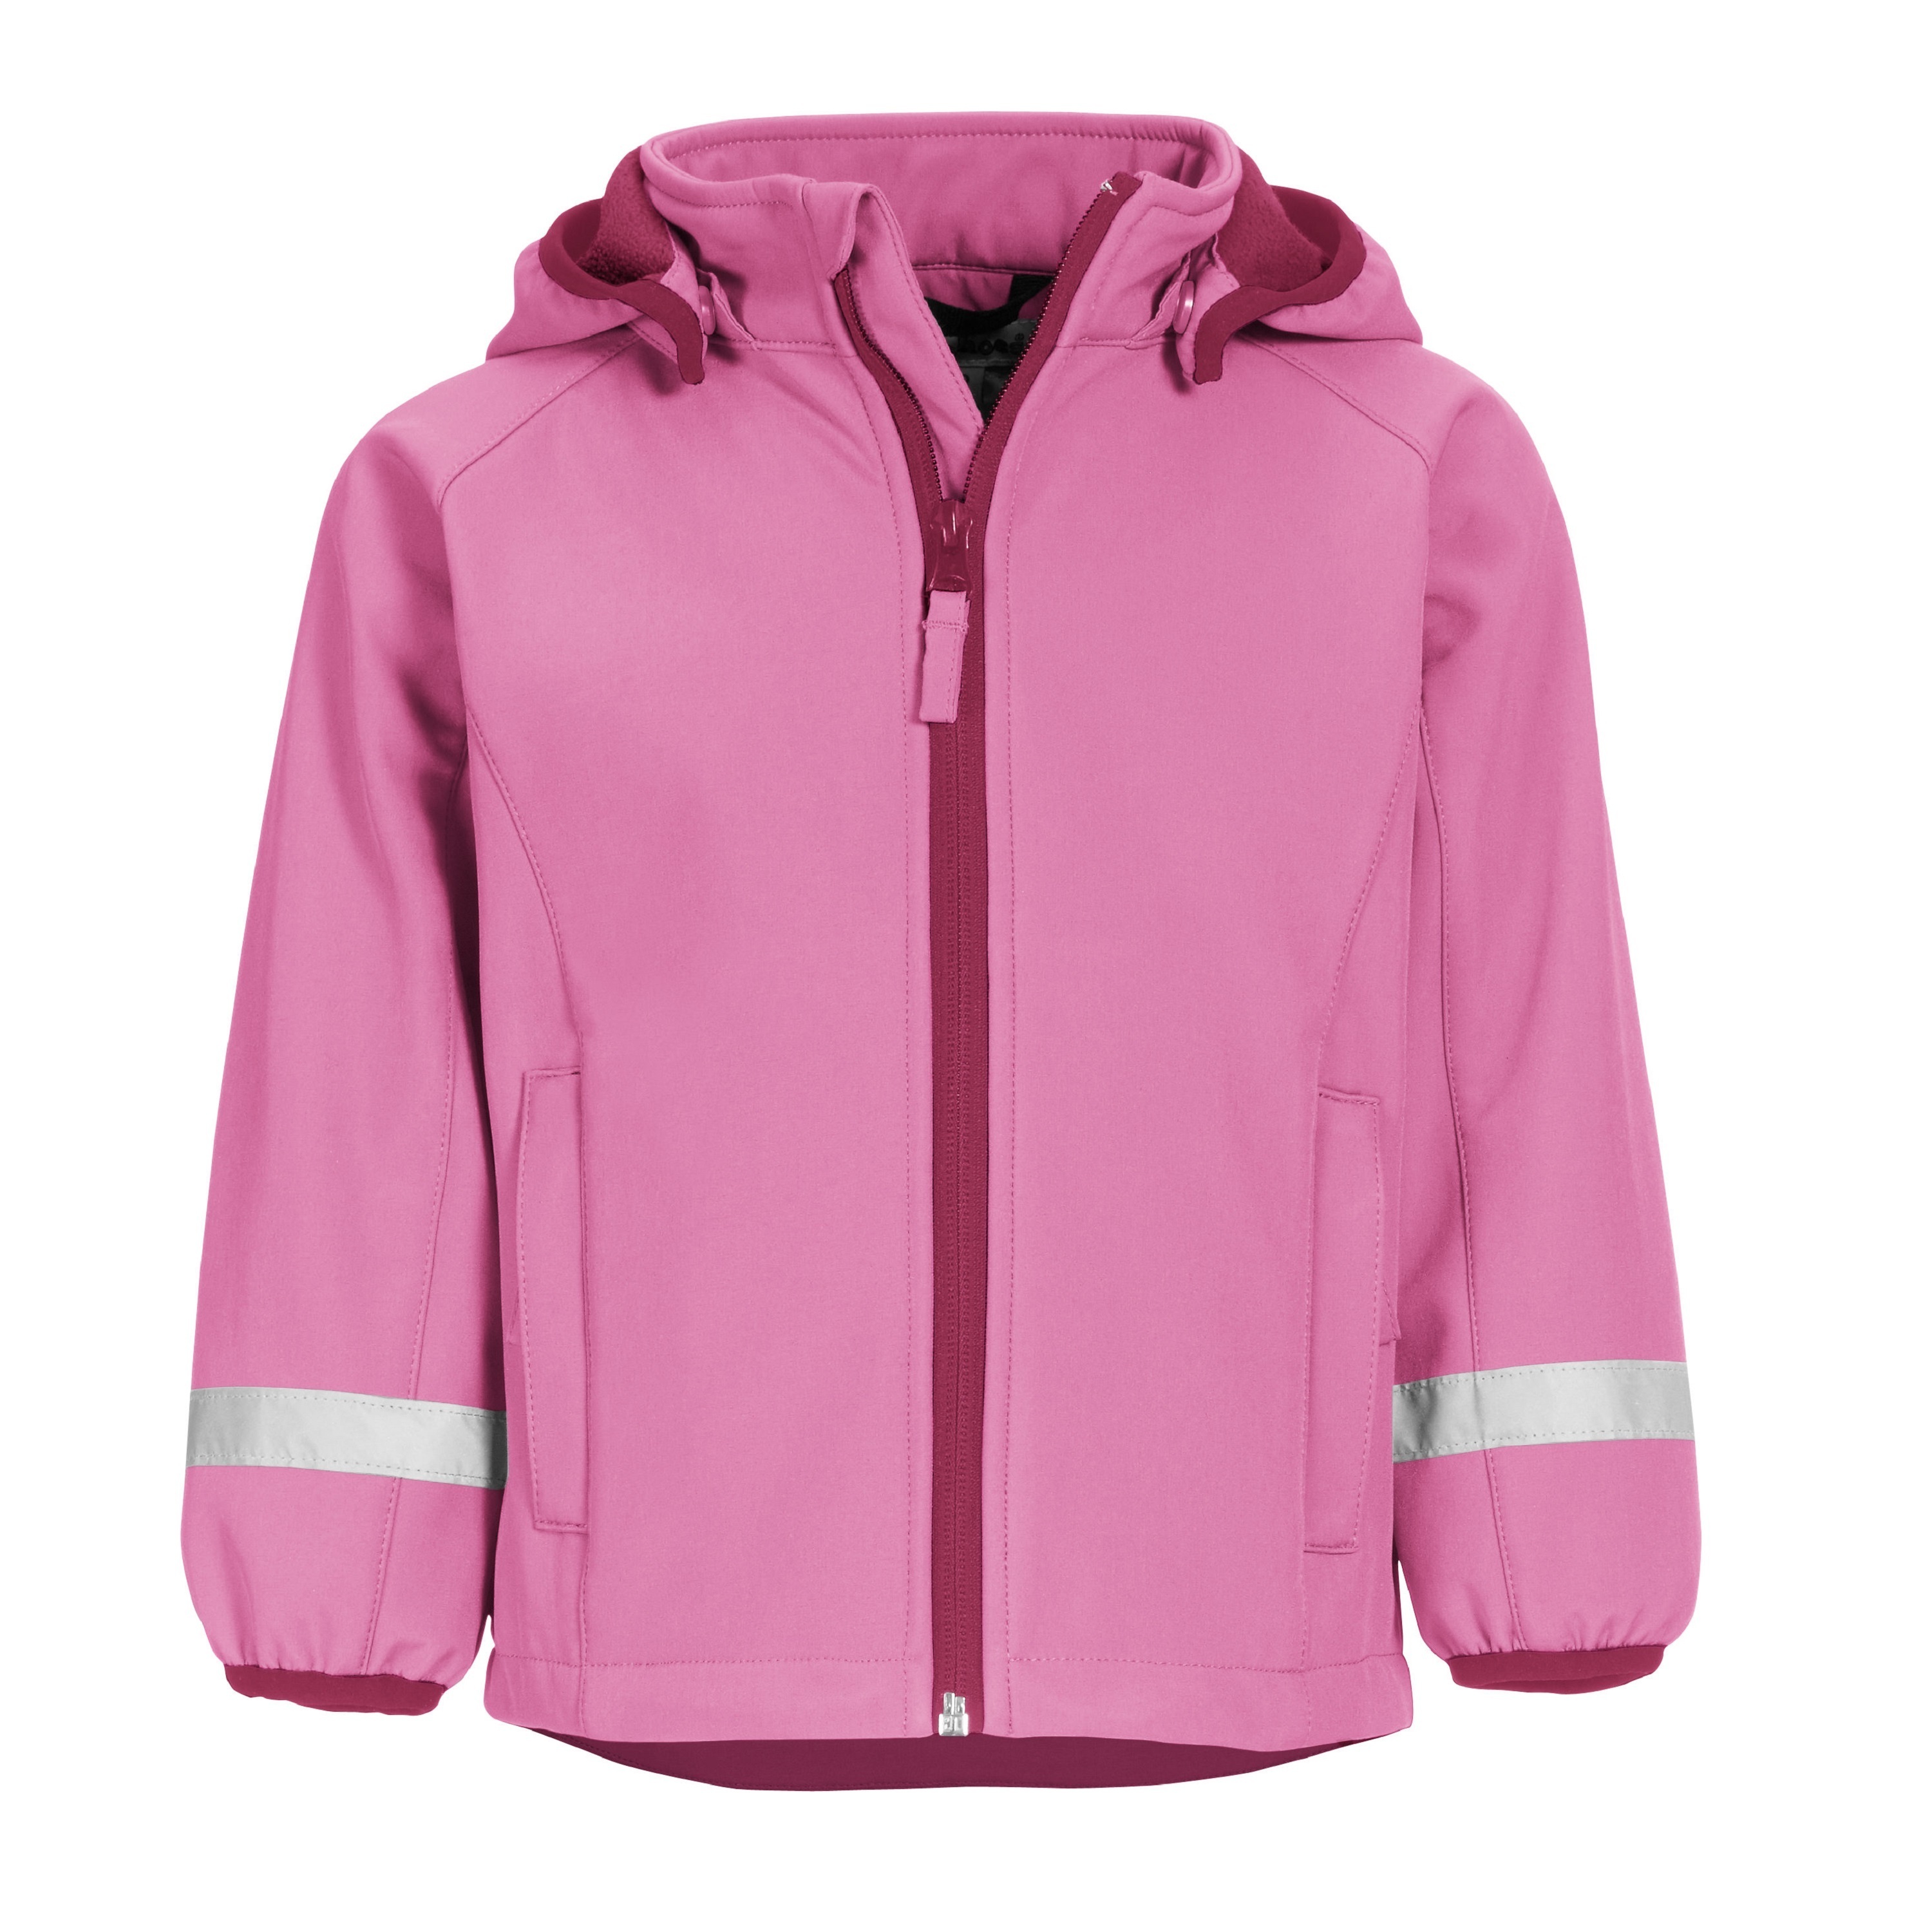 Куртка детская Playshoes 430110, розовый, 116 зеленая мембранная куртка herno детская